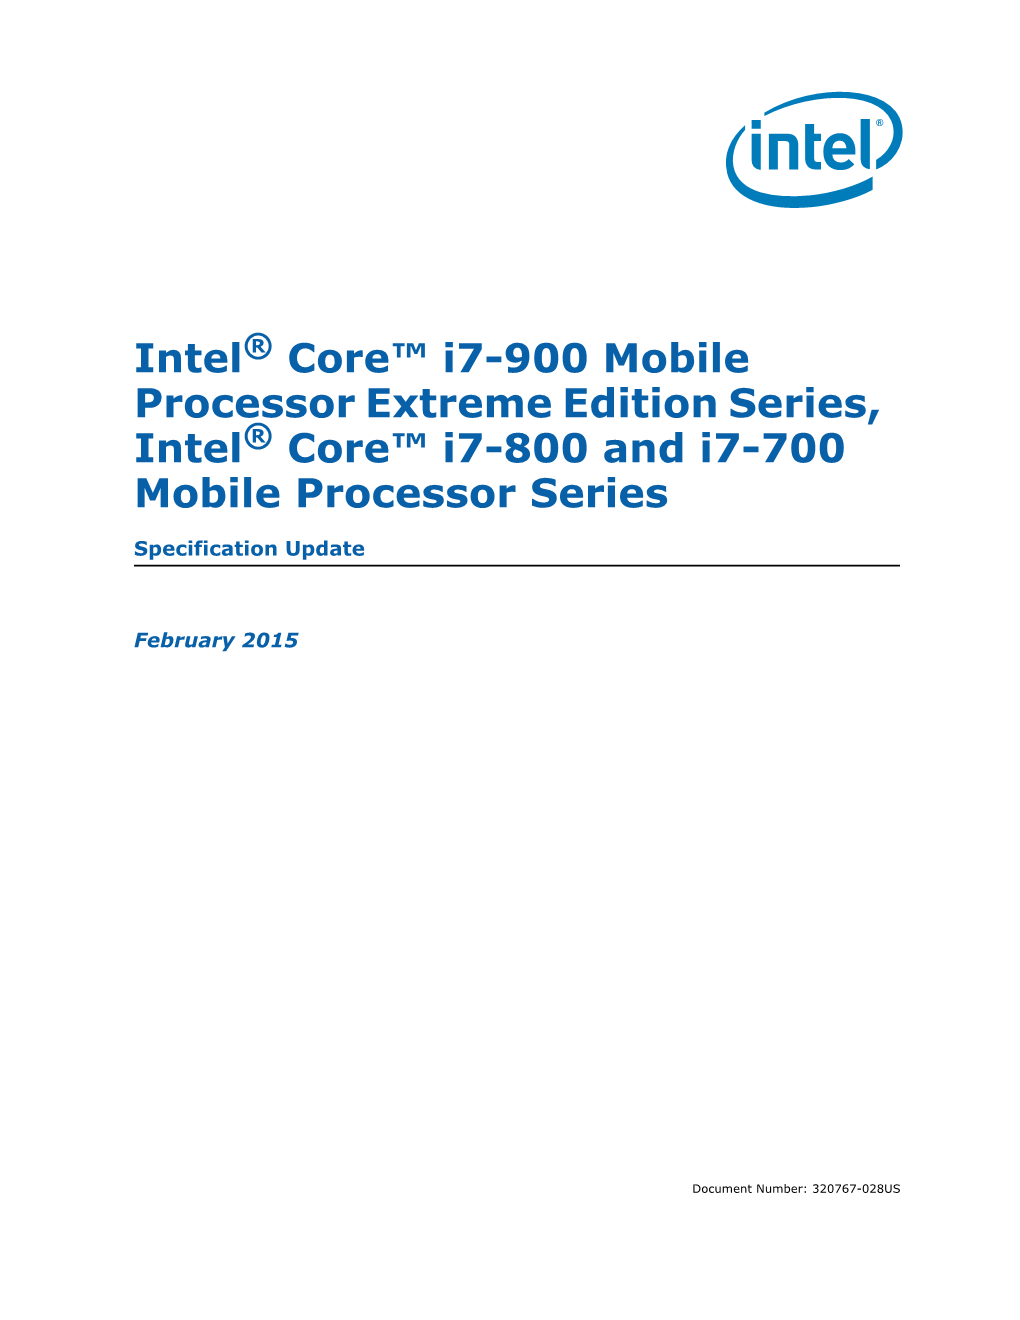 Intel® Core™ I7-900 Mobile Processor Extreme Edition Series, Intel® Core™ I7-800 and I7-700 Mobile Processor Series